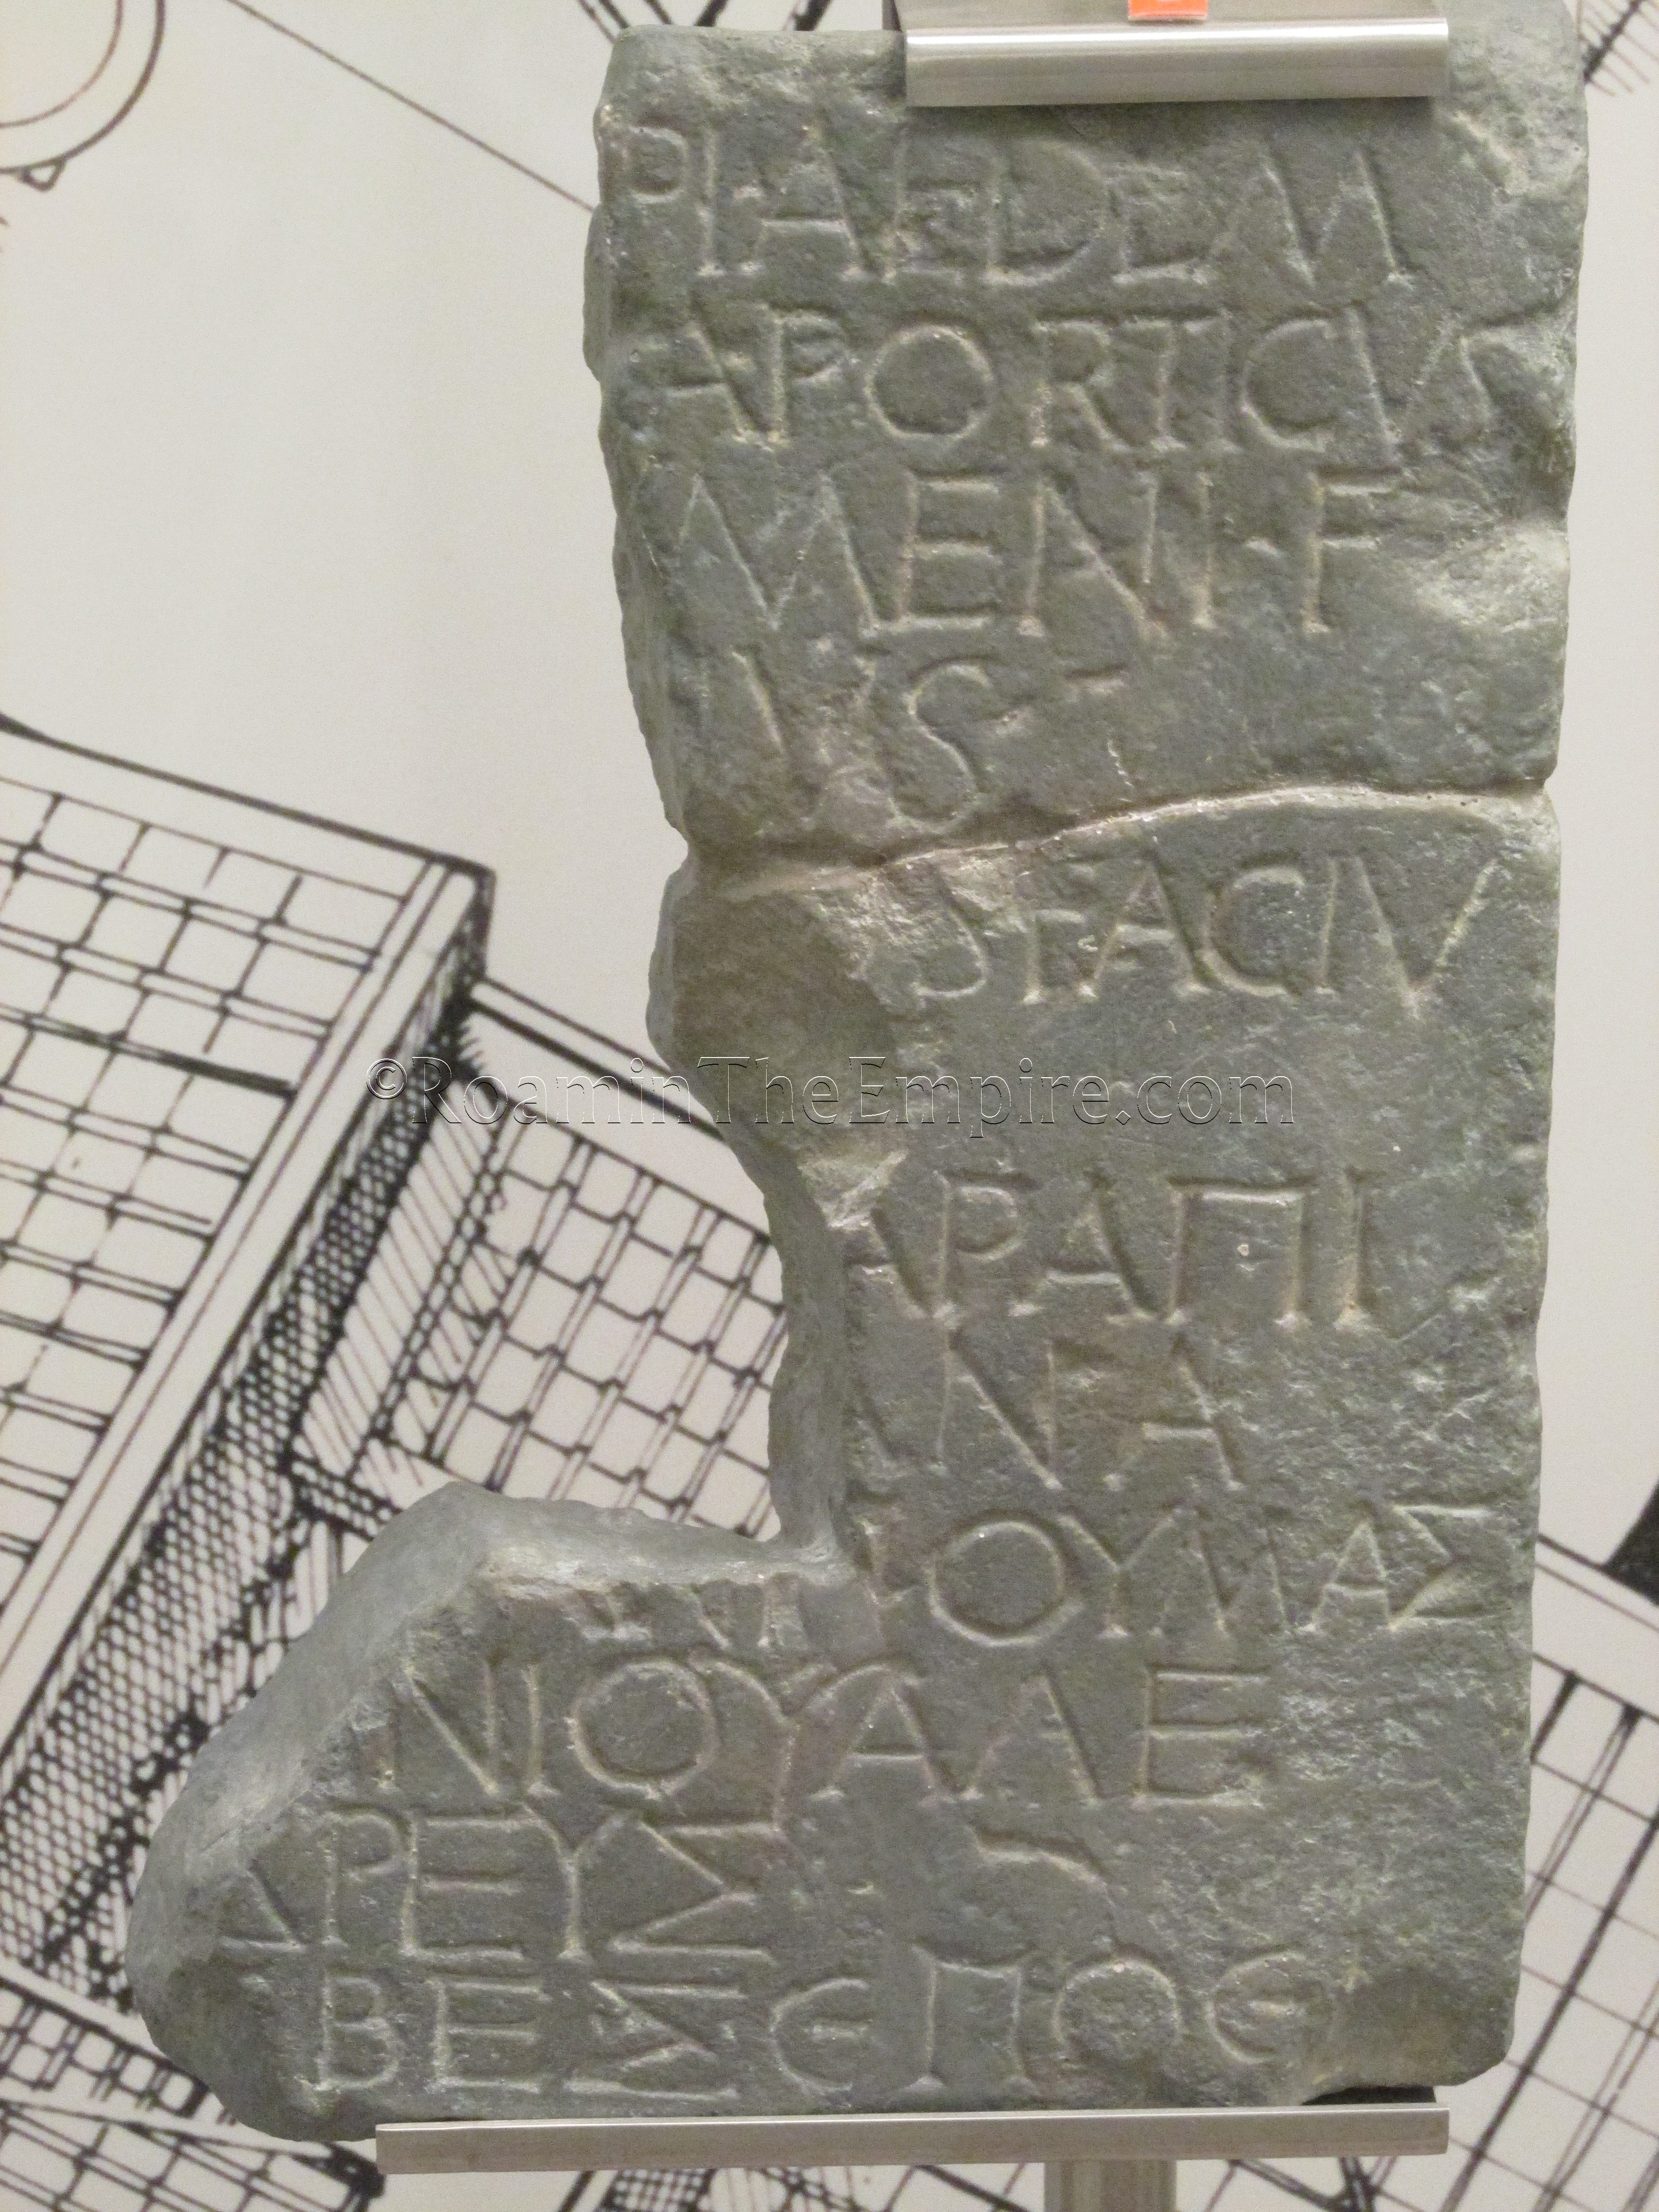 Bilingual inscription of Noumas of Alexandria.